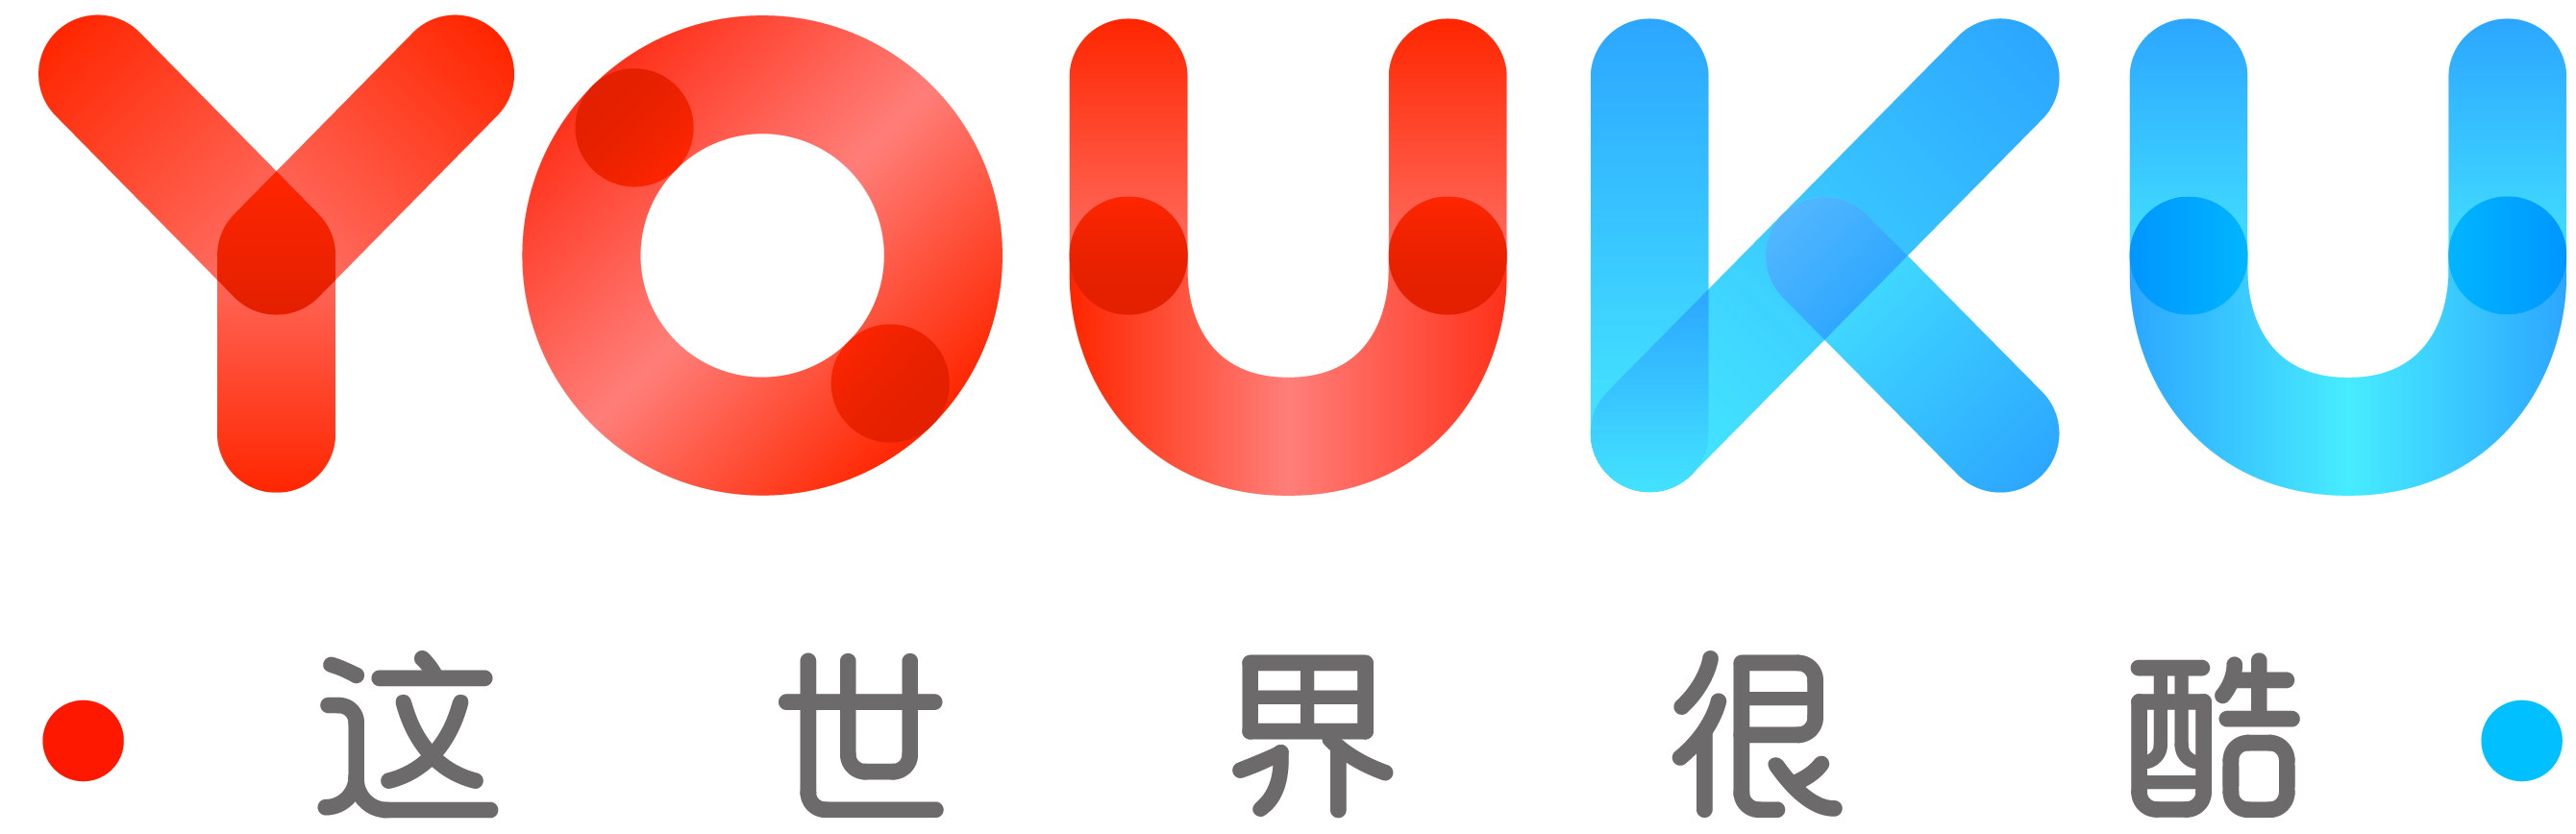 优酷logo图, Youku, Platfor